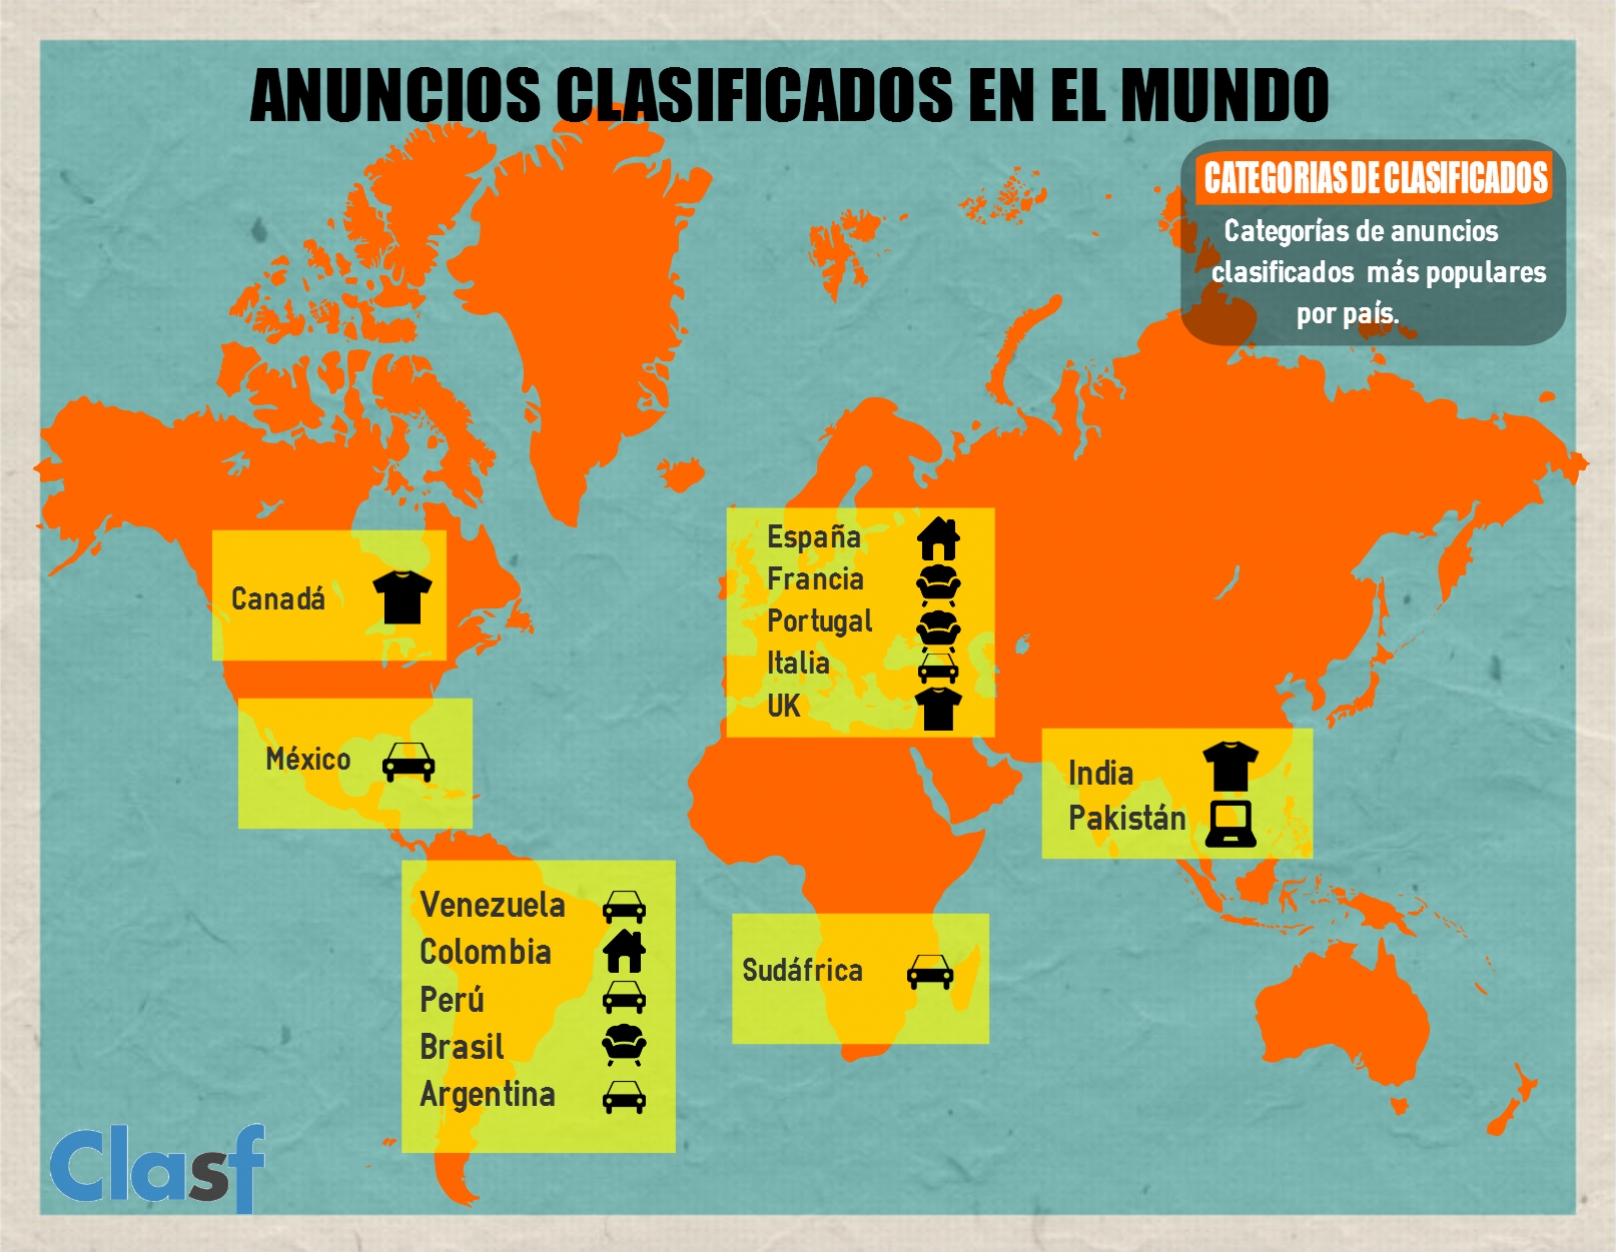 Infografía categorías de clasificados más importantes por país